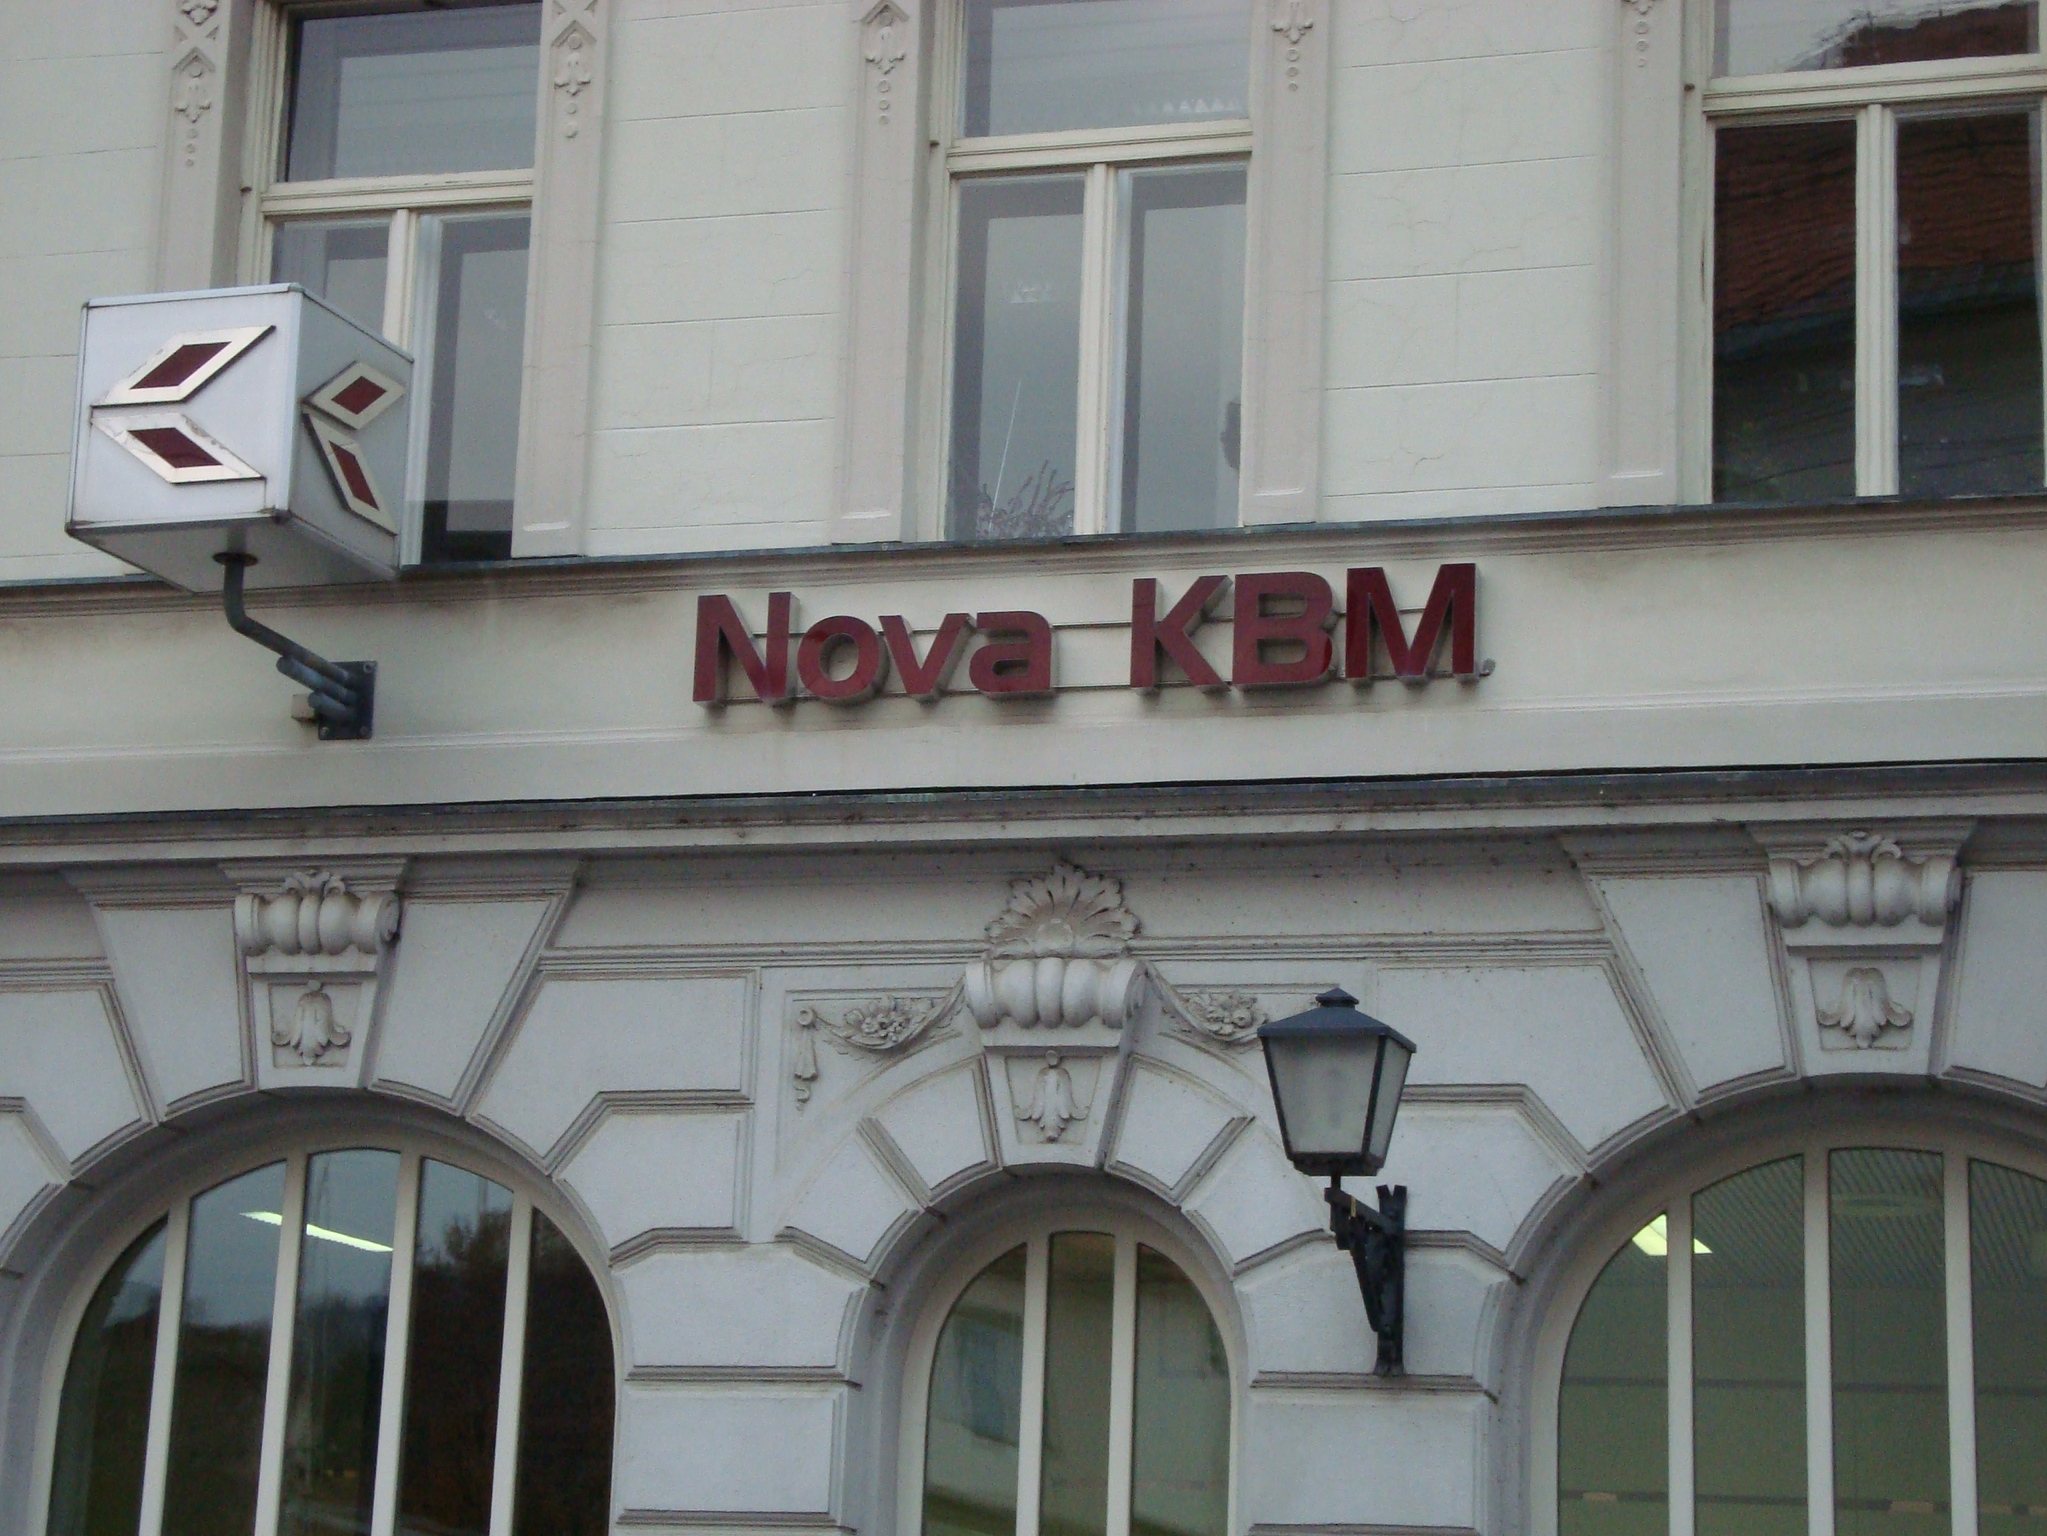 Nova KBM